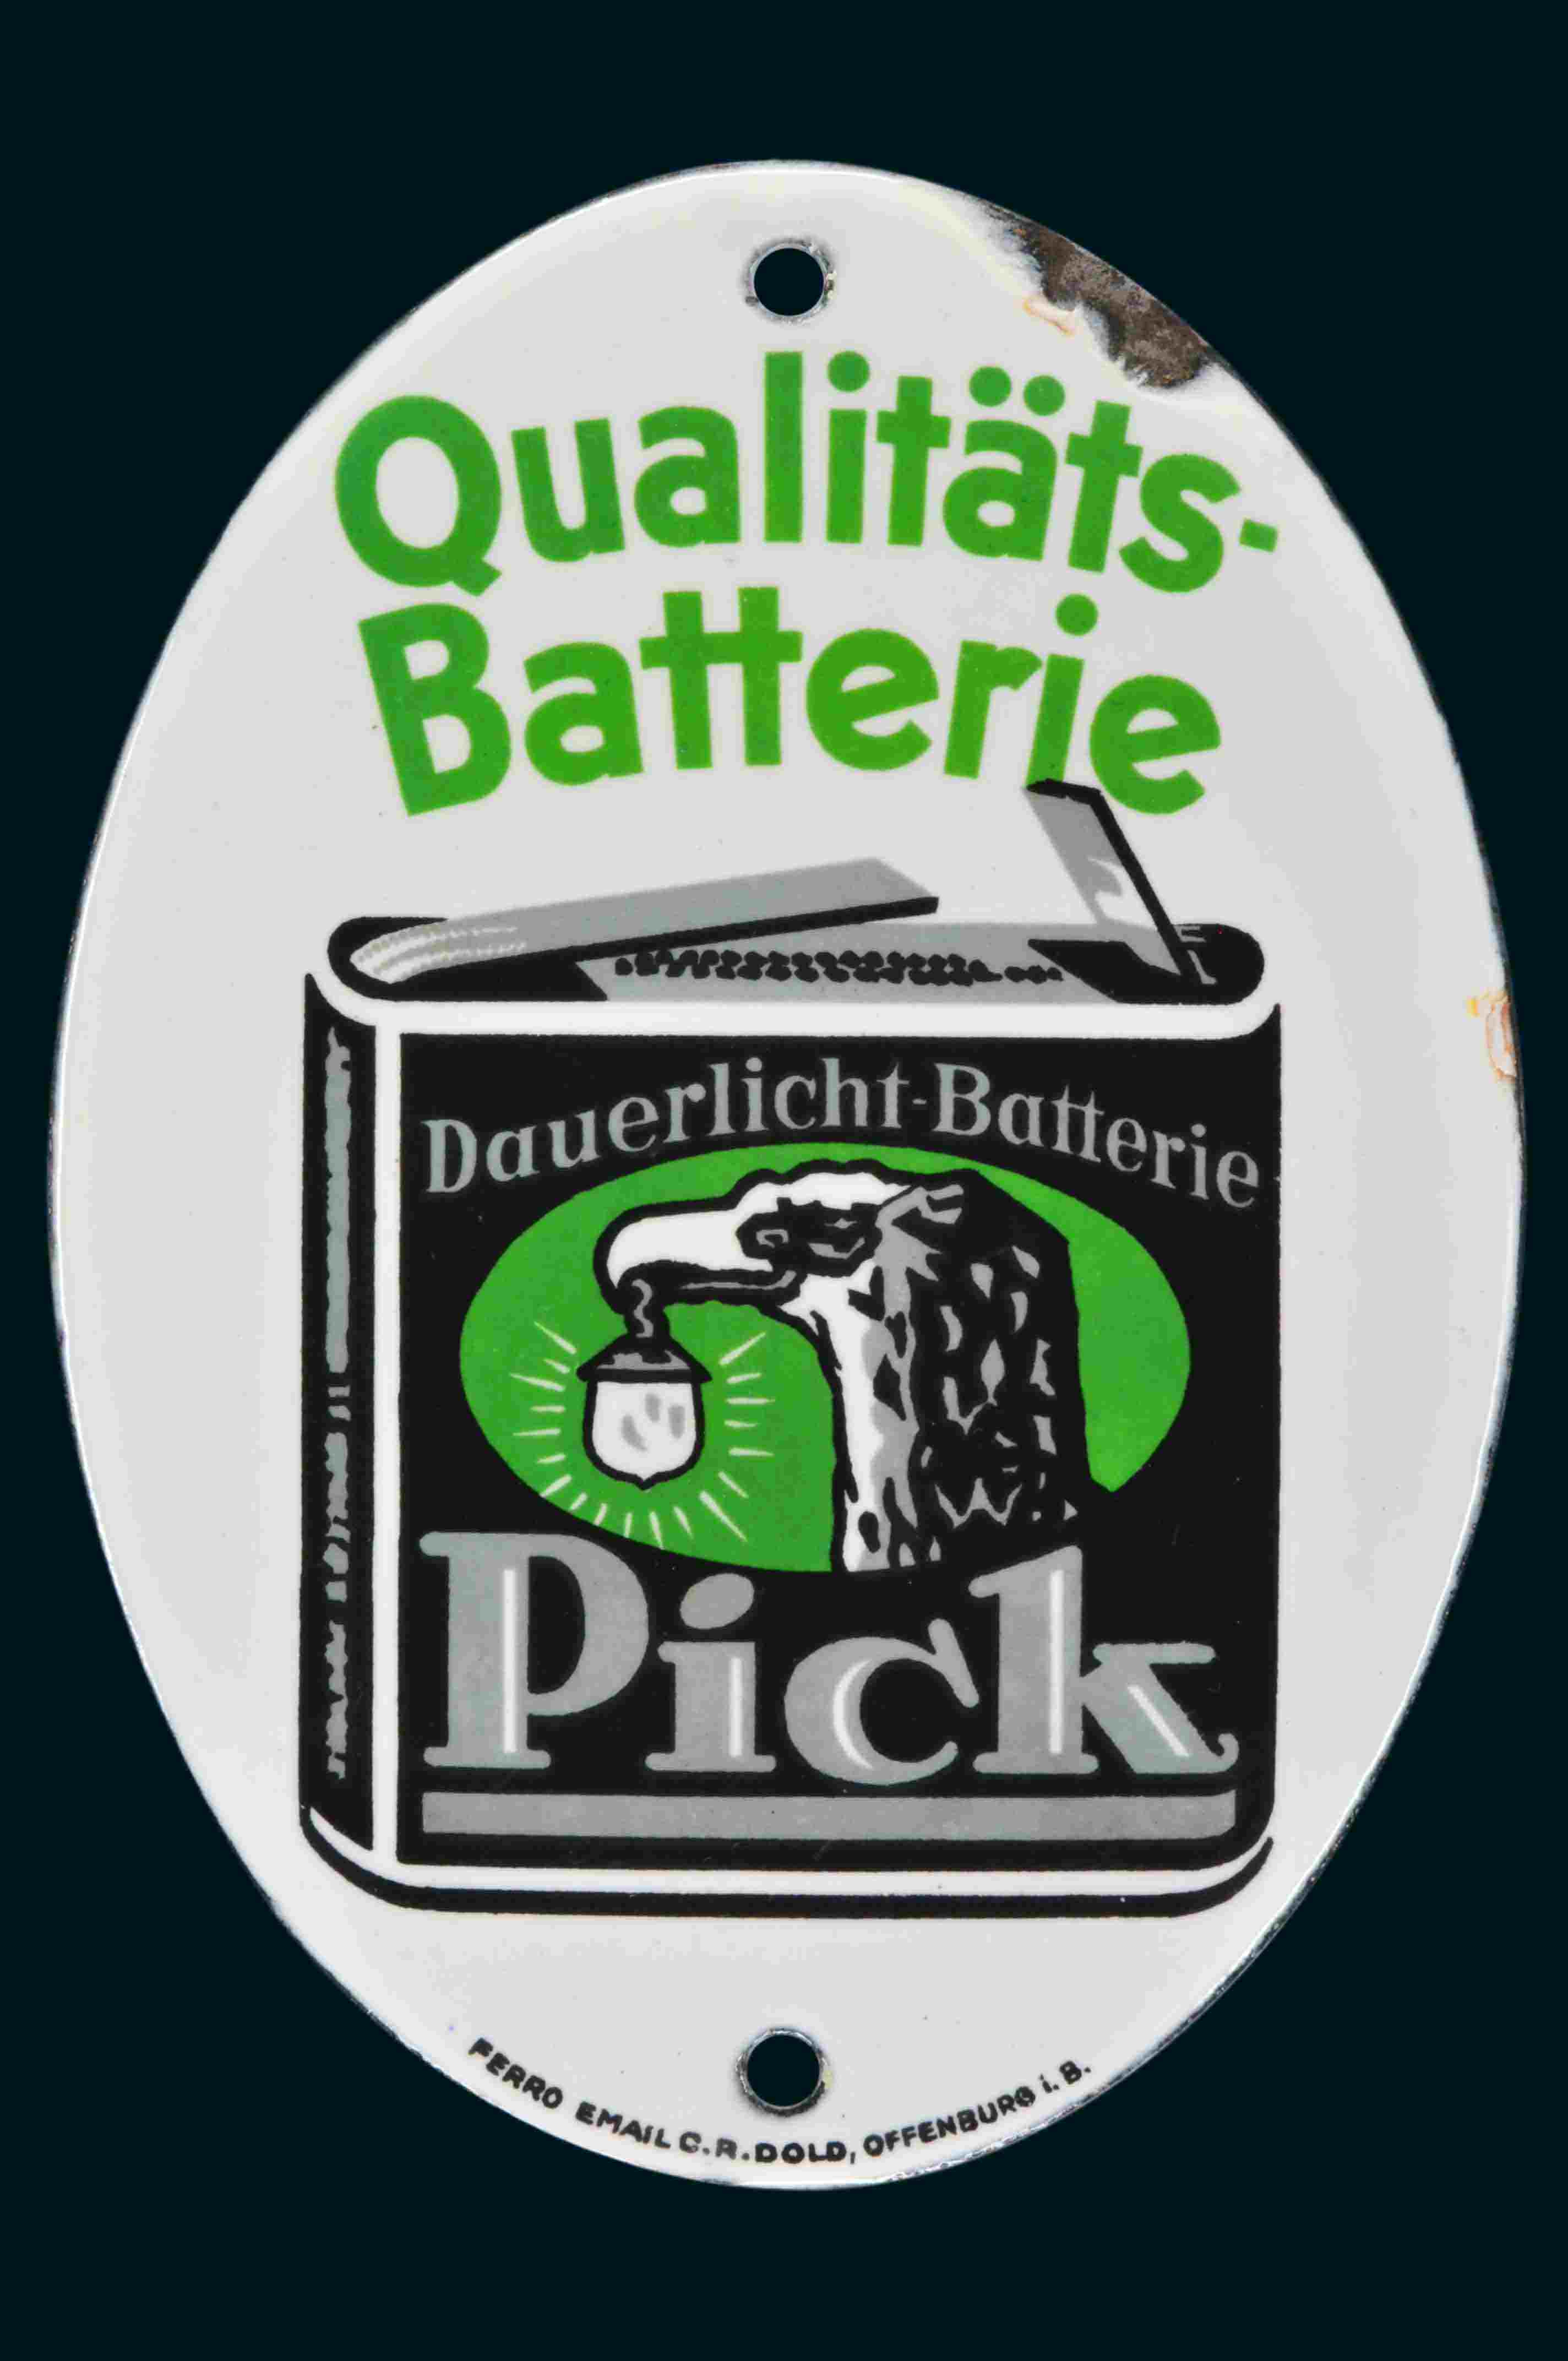 Pick Qualitäts-Batterie 